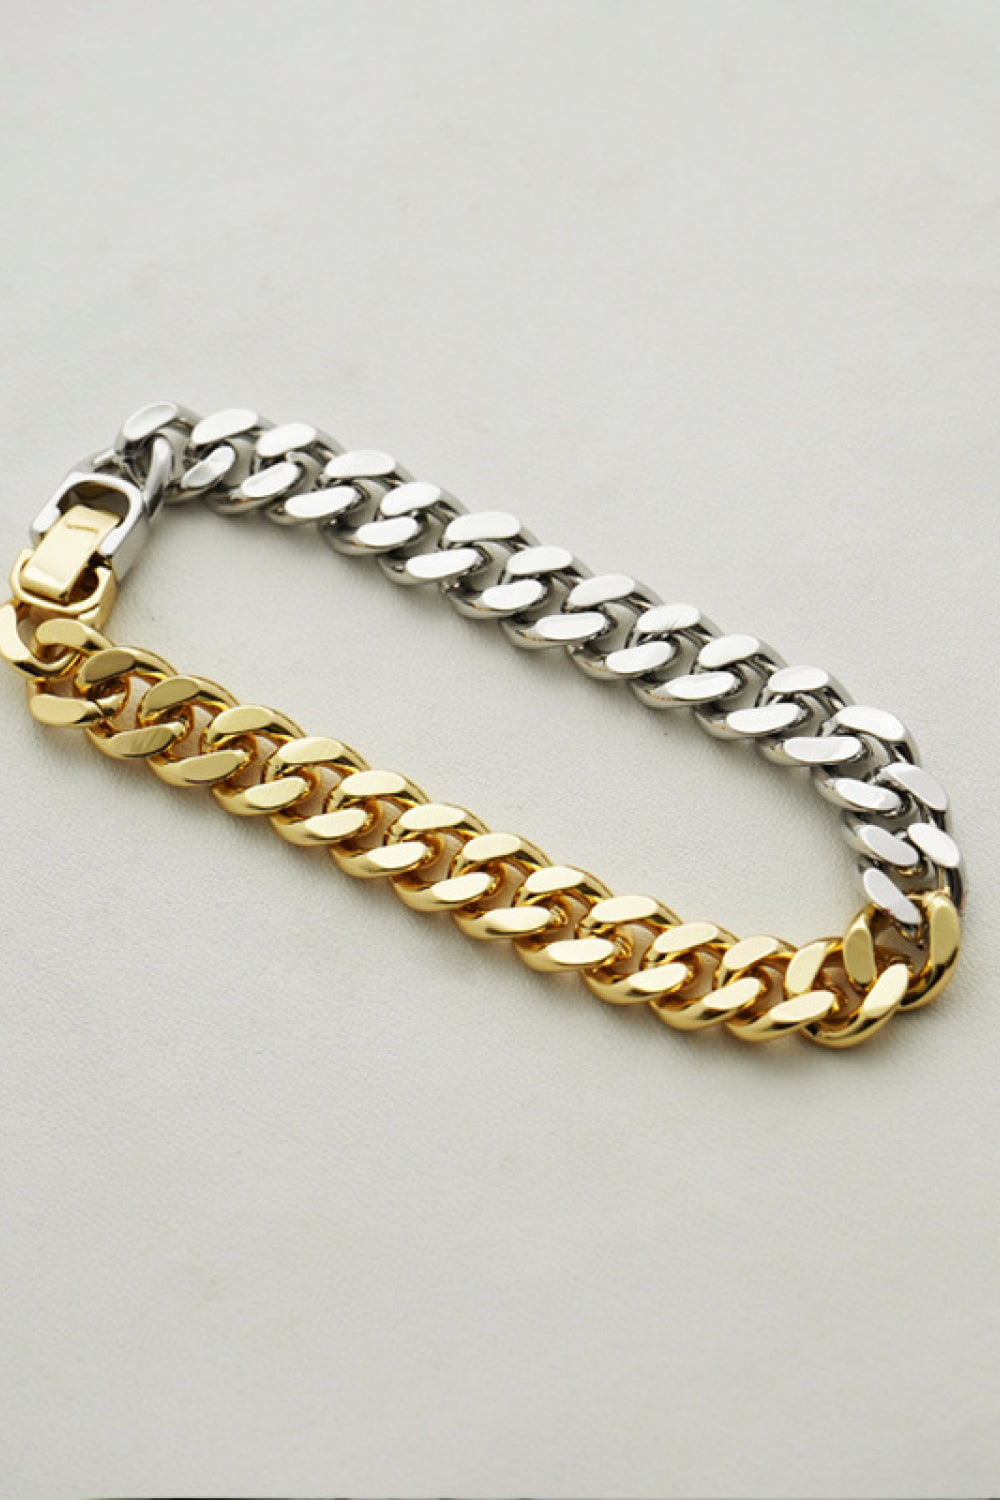 Two-Tone Chunky Chain Bracelet - Multi / One Size - Women’s Jewelry - Bracelets - 4 - 2024